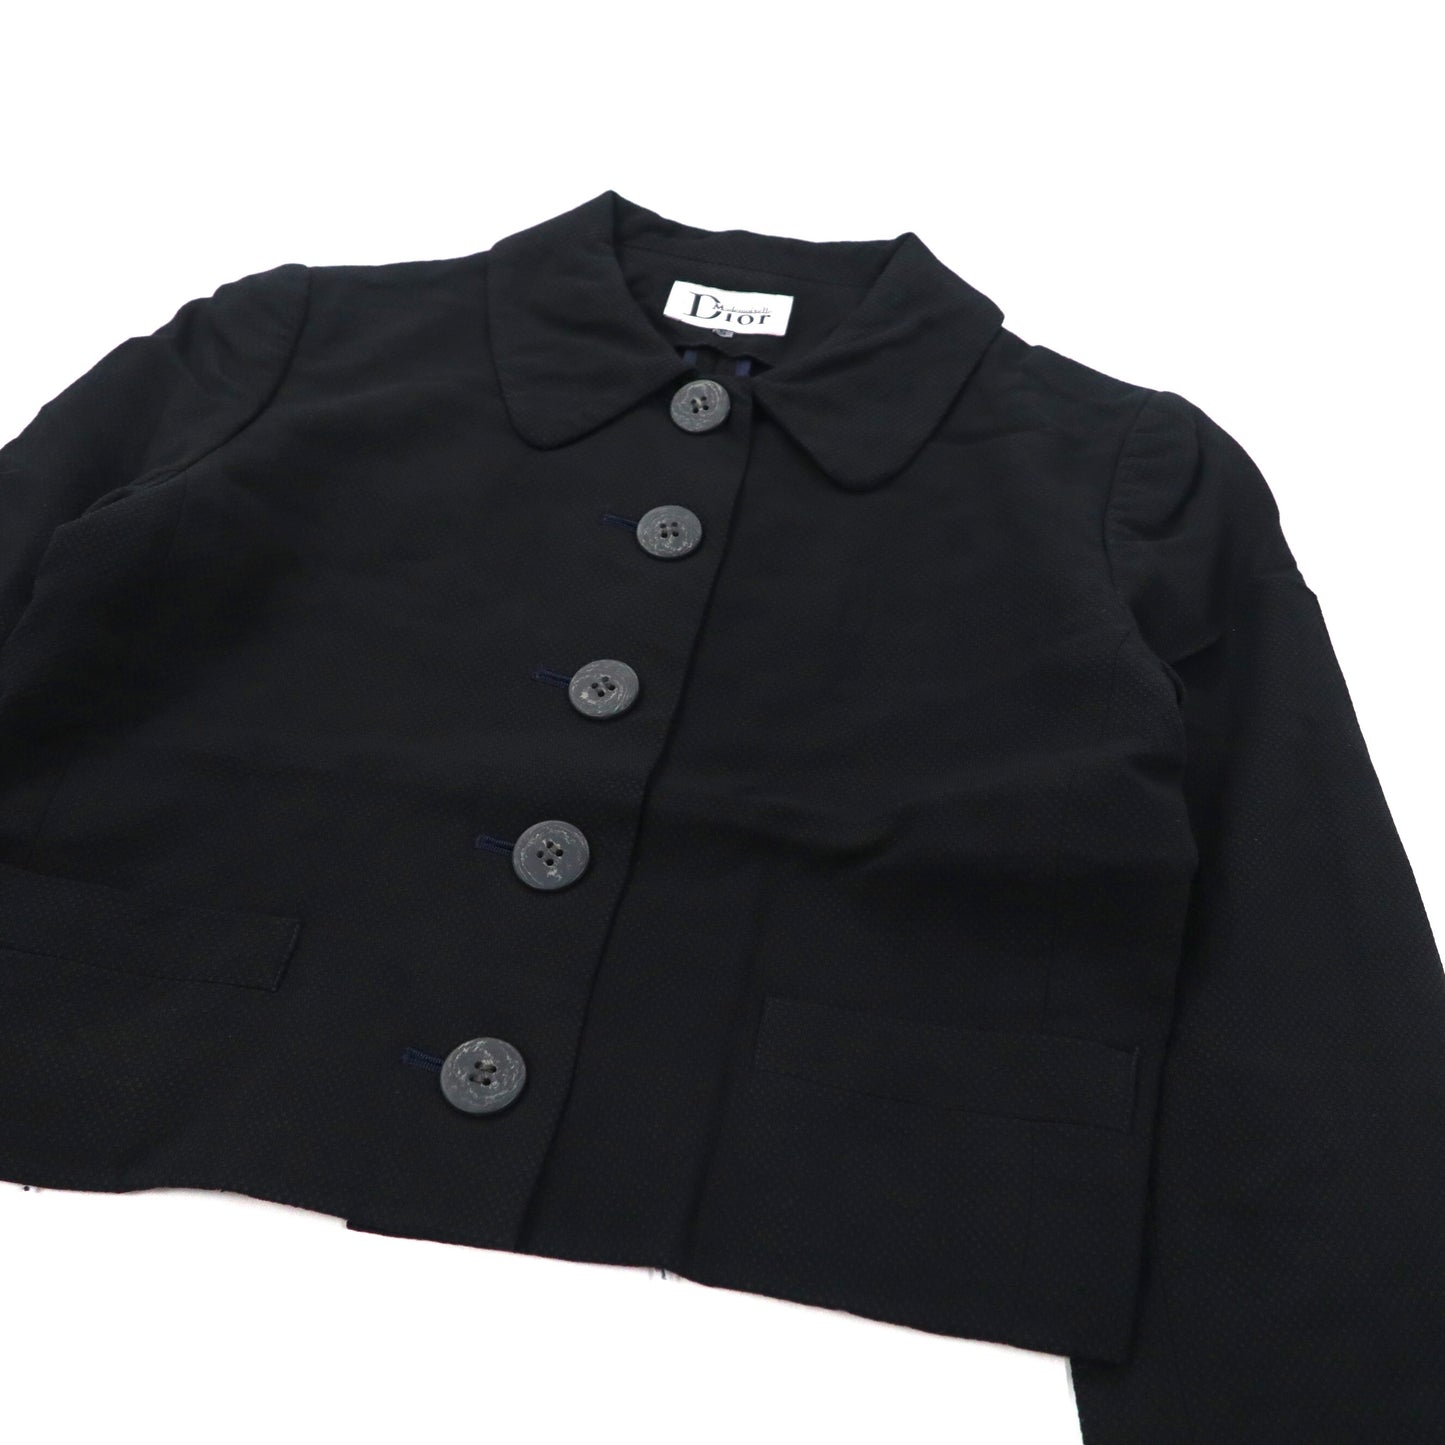 Christian Dior ボックスシルエット デザインジャケット S ブラック レーヨン Mademoiselle 70年代